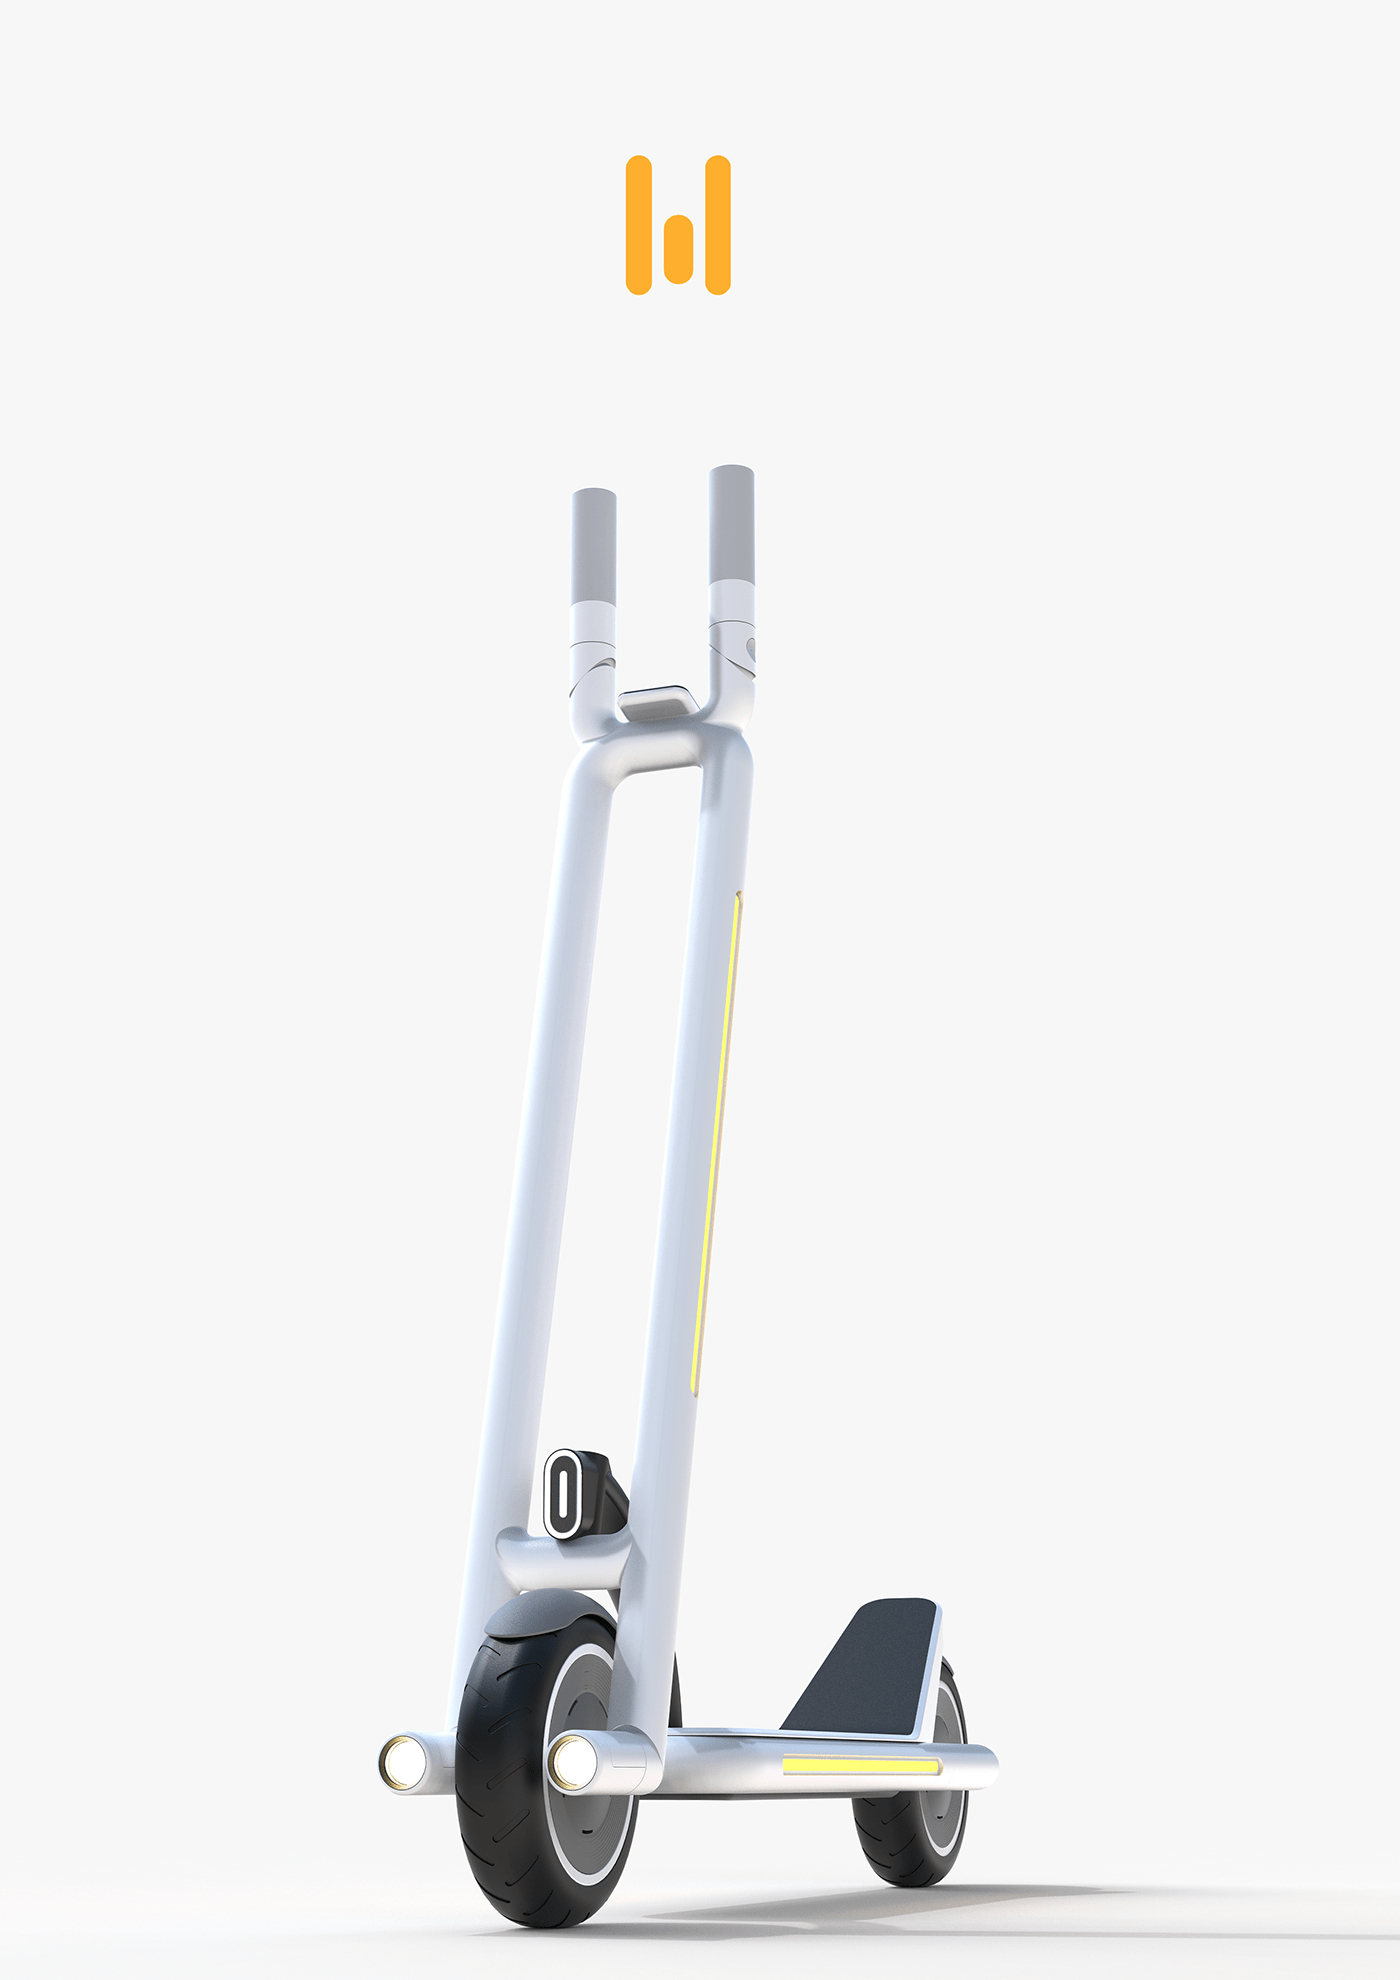 3D kickboard mobility product design  Render